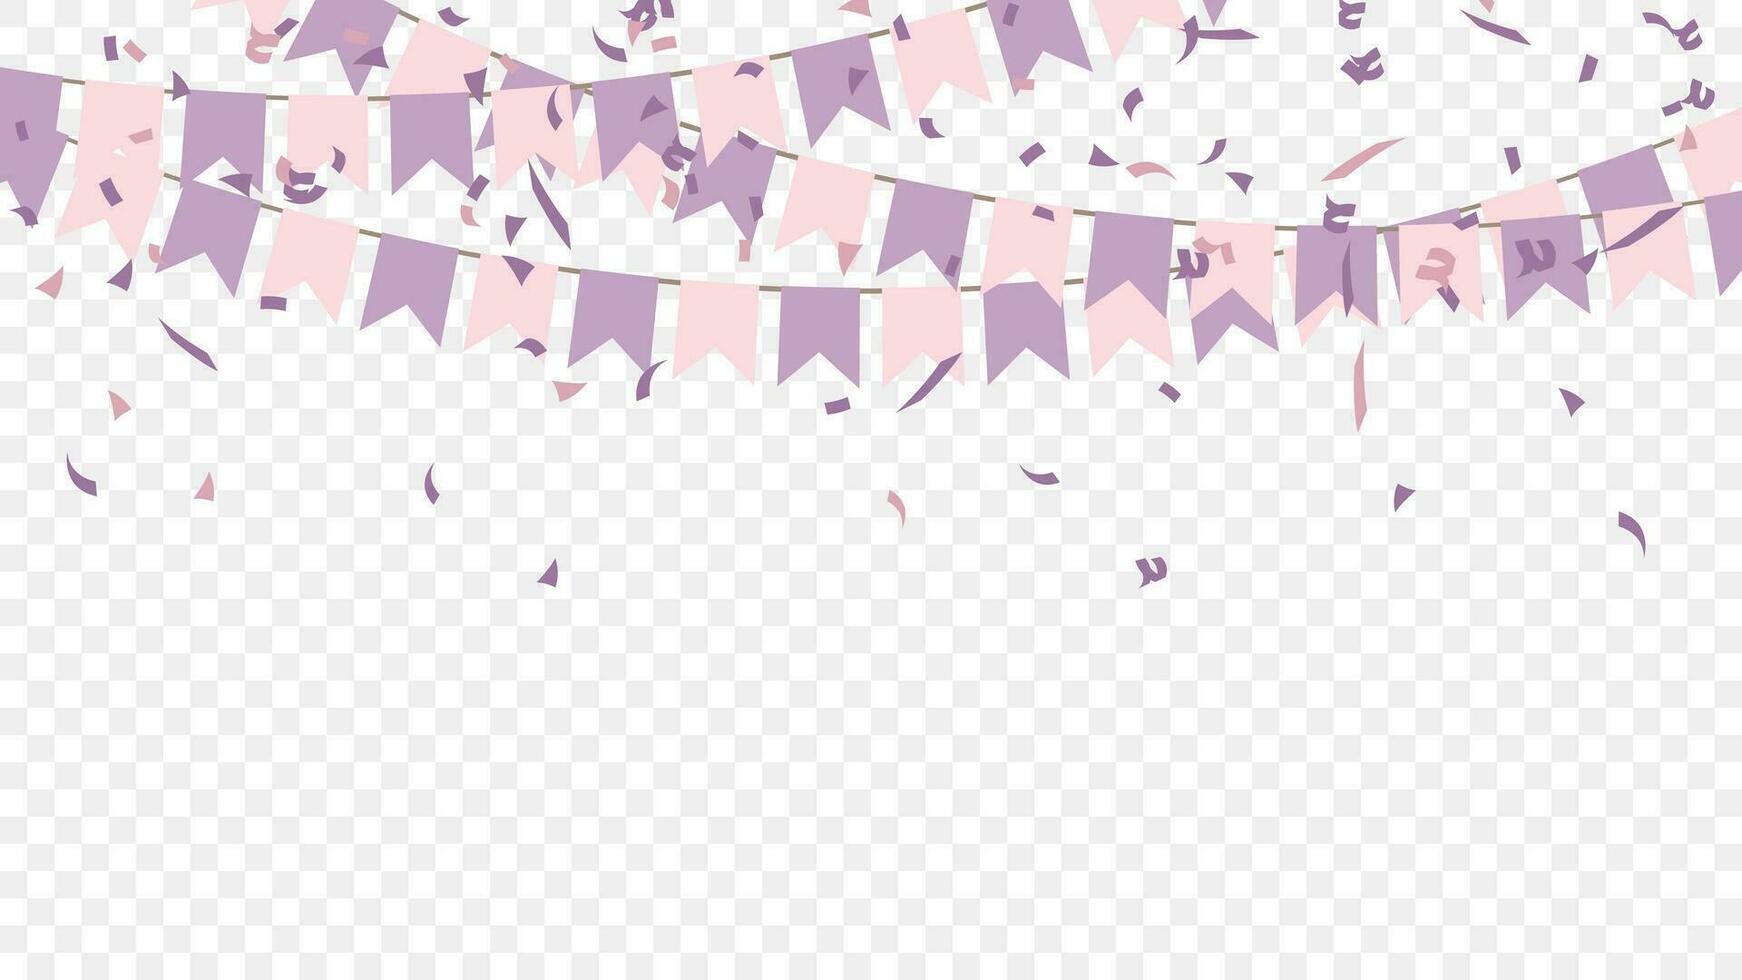 Purper roze partij vlaggen met confetti vallen. viering en verjaardag. vector illustratie